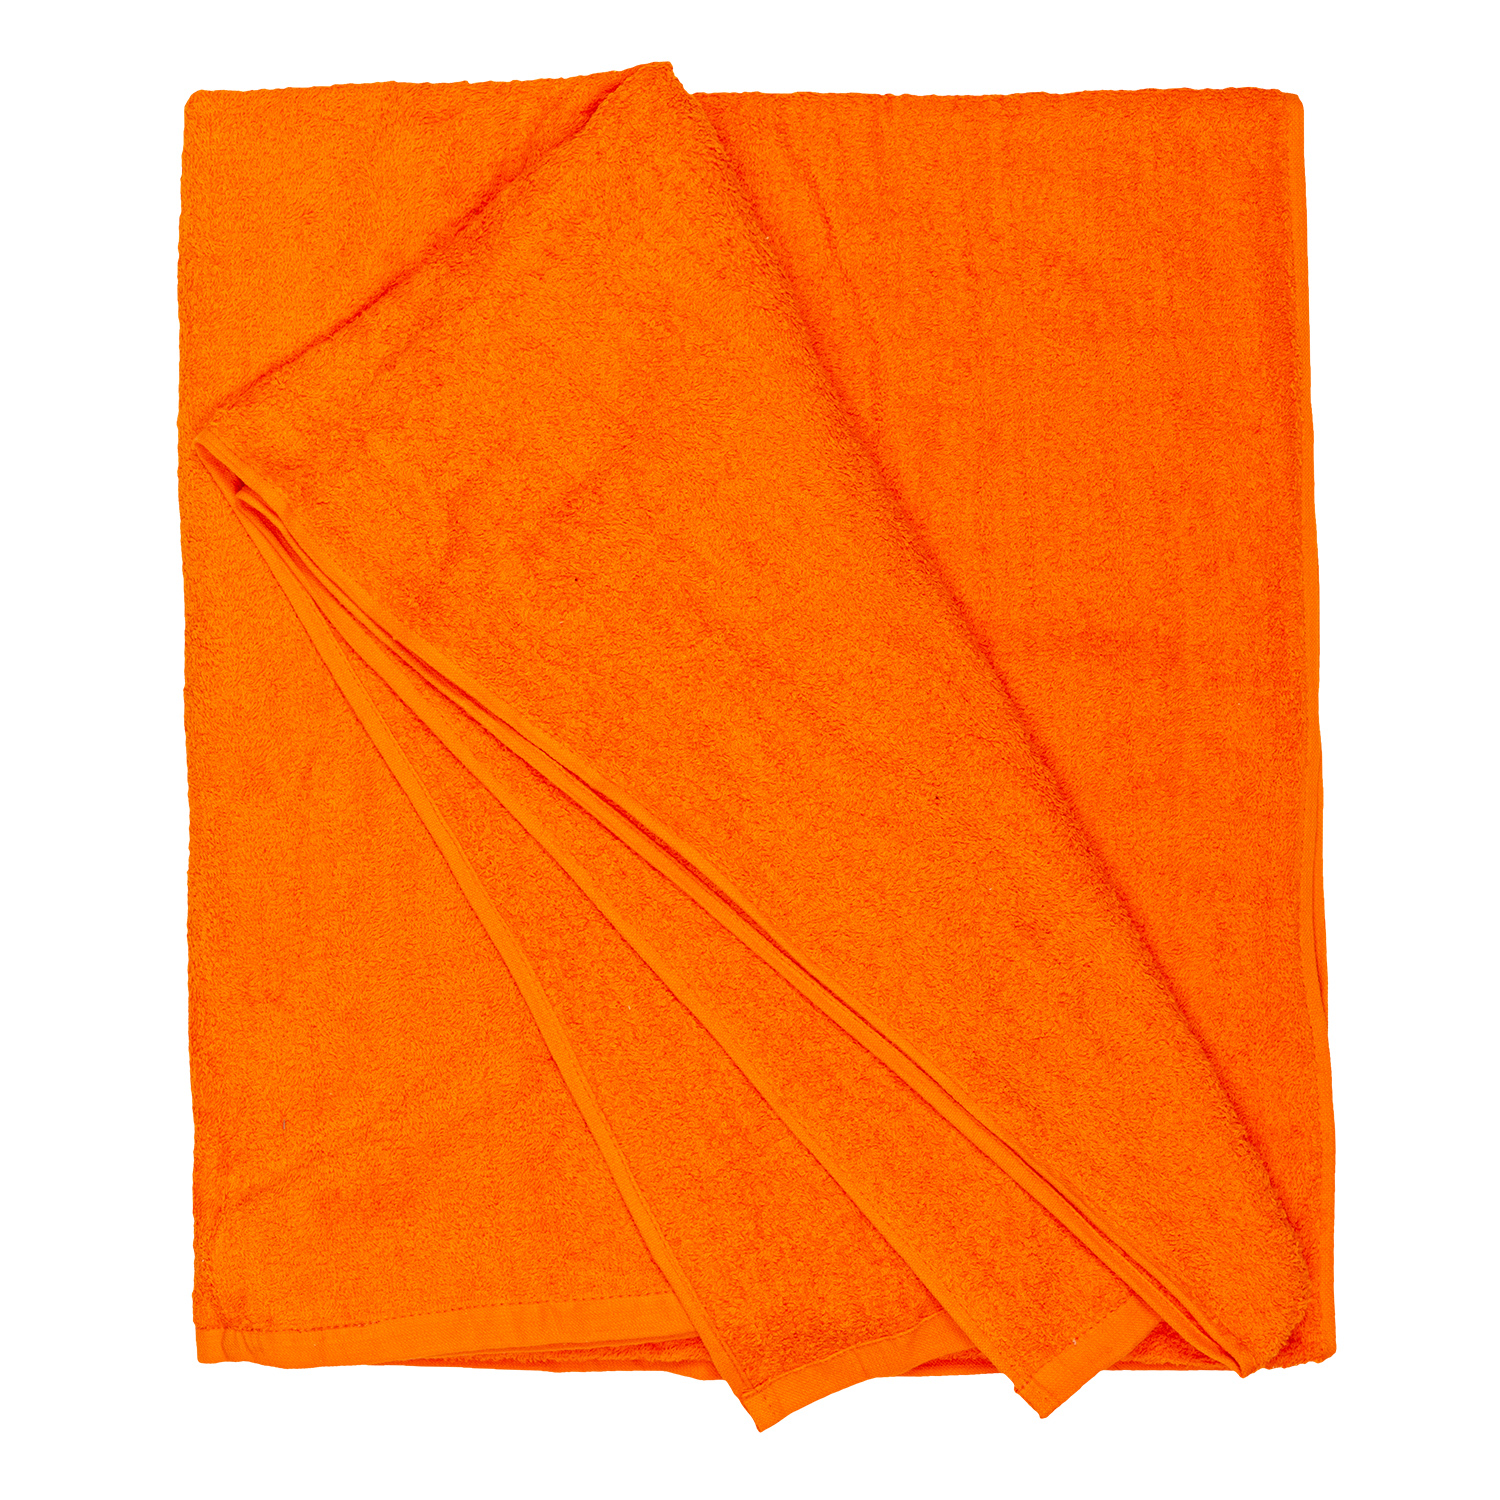 Orangenes Strandhandtuch HELSINKI von ADAMO in grossen Grössen 100x220 cm oder 155x220 cm